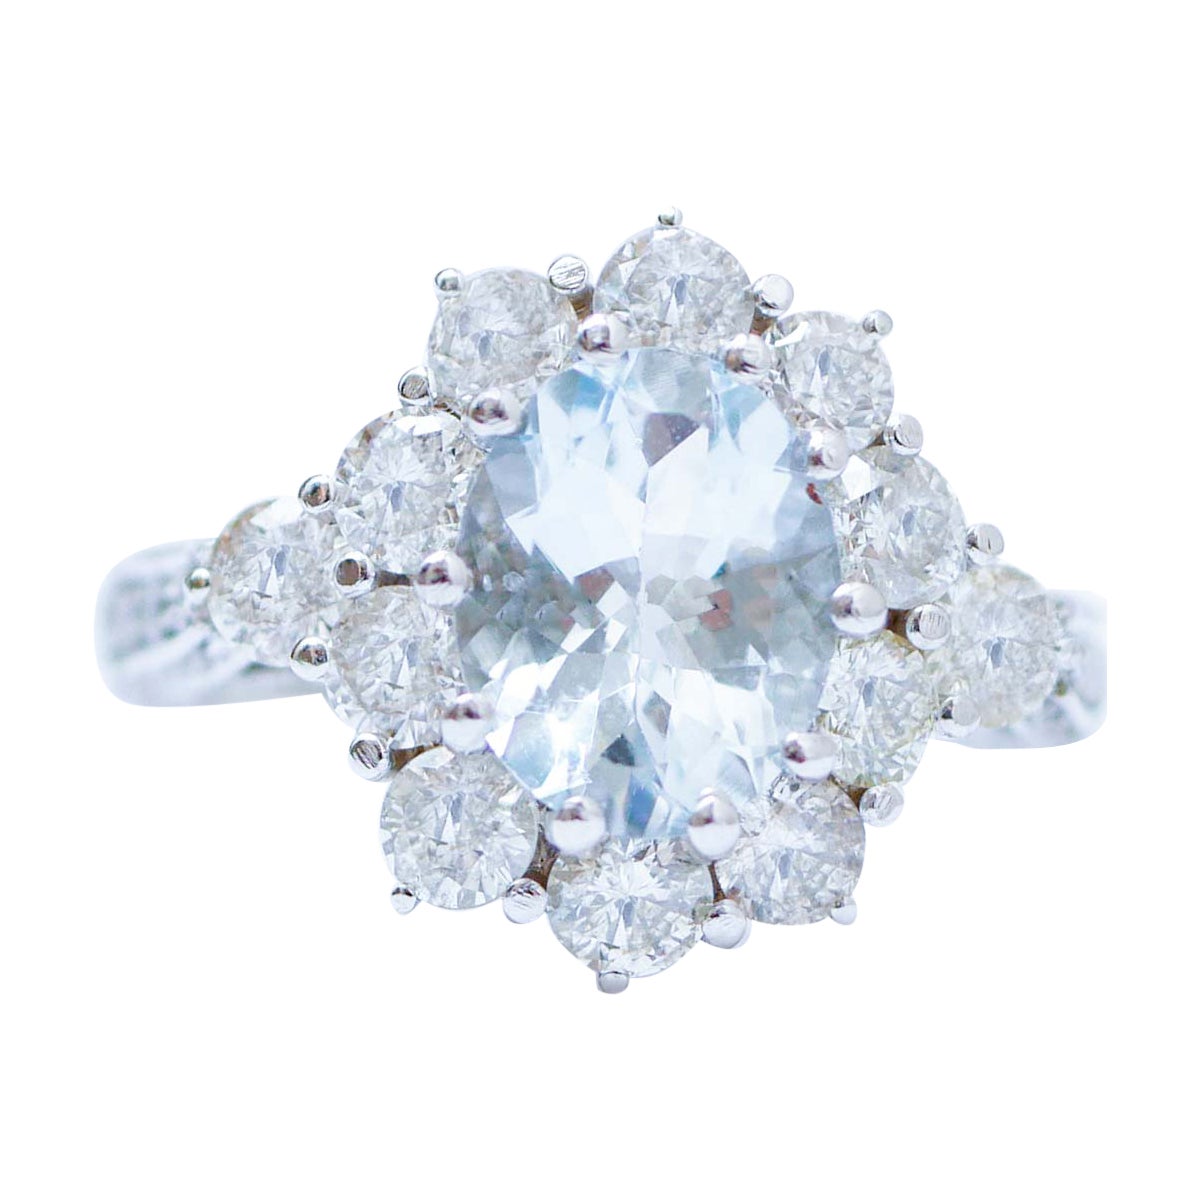 Aquamarine, Diamonds, Platinum Ring.